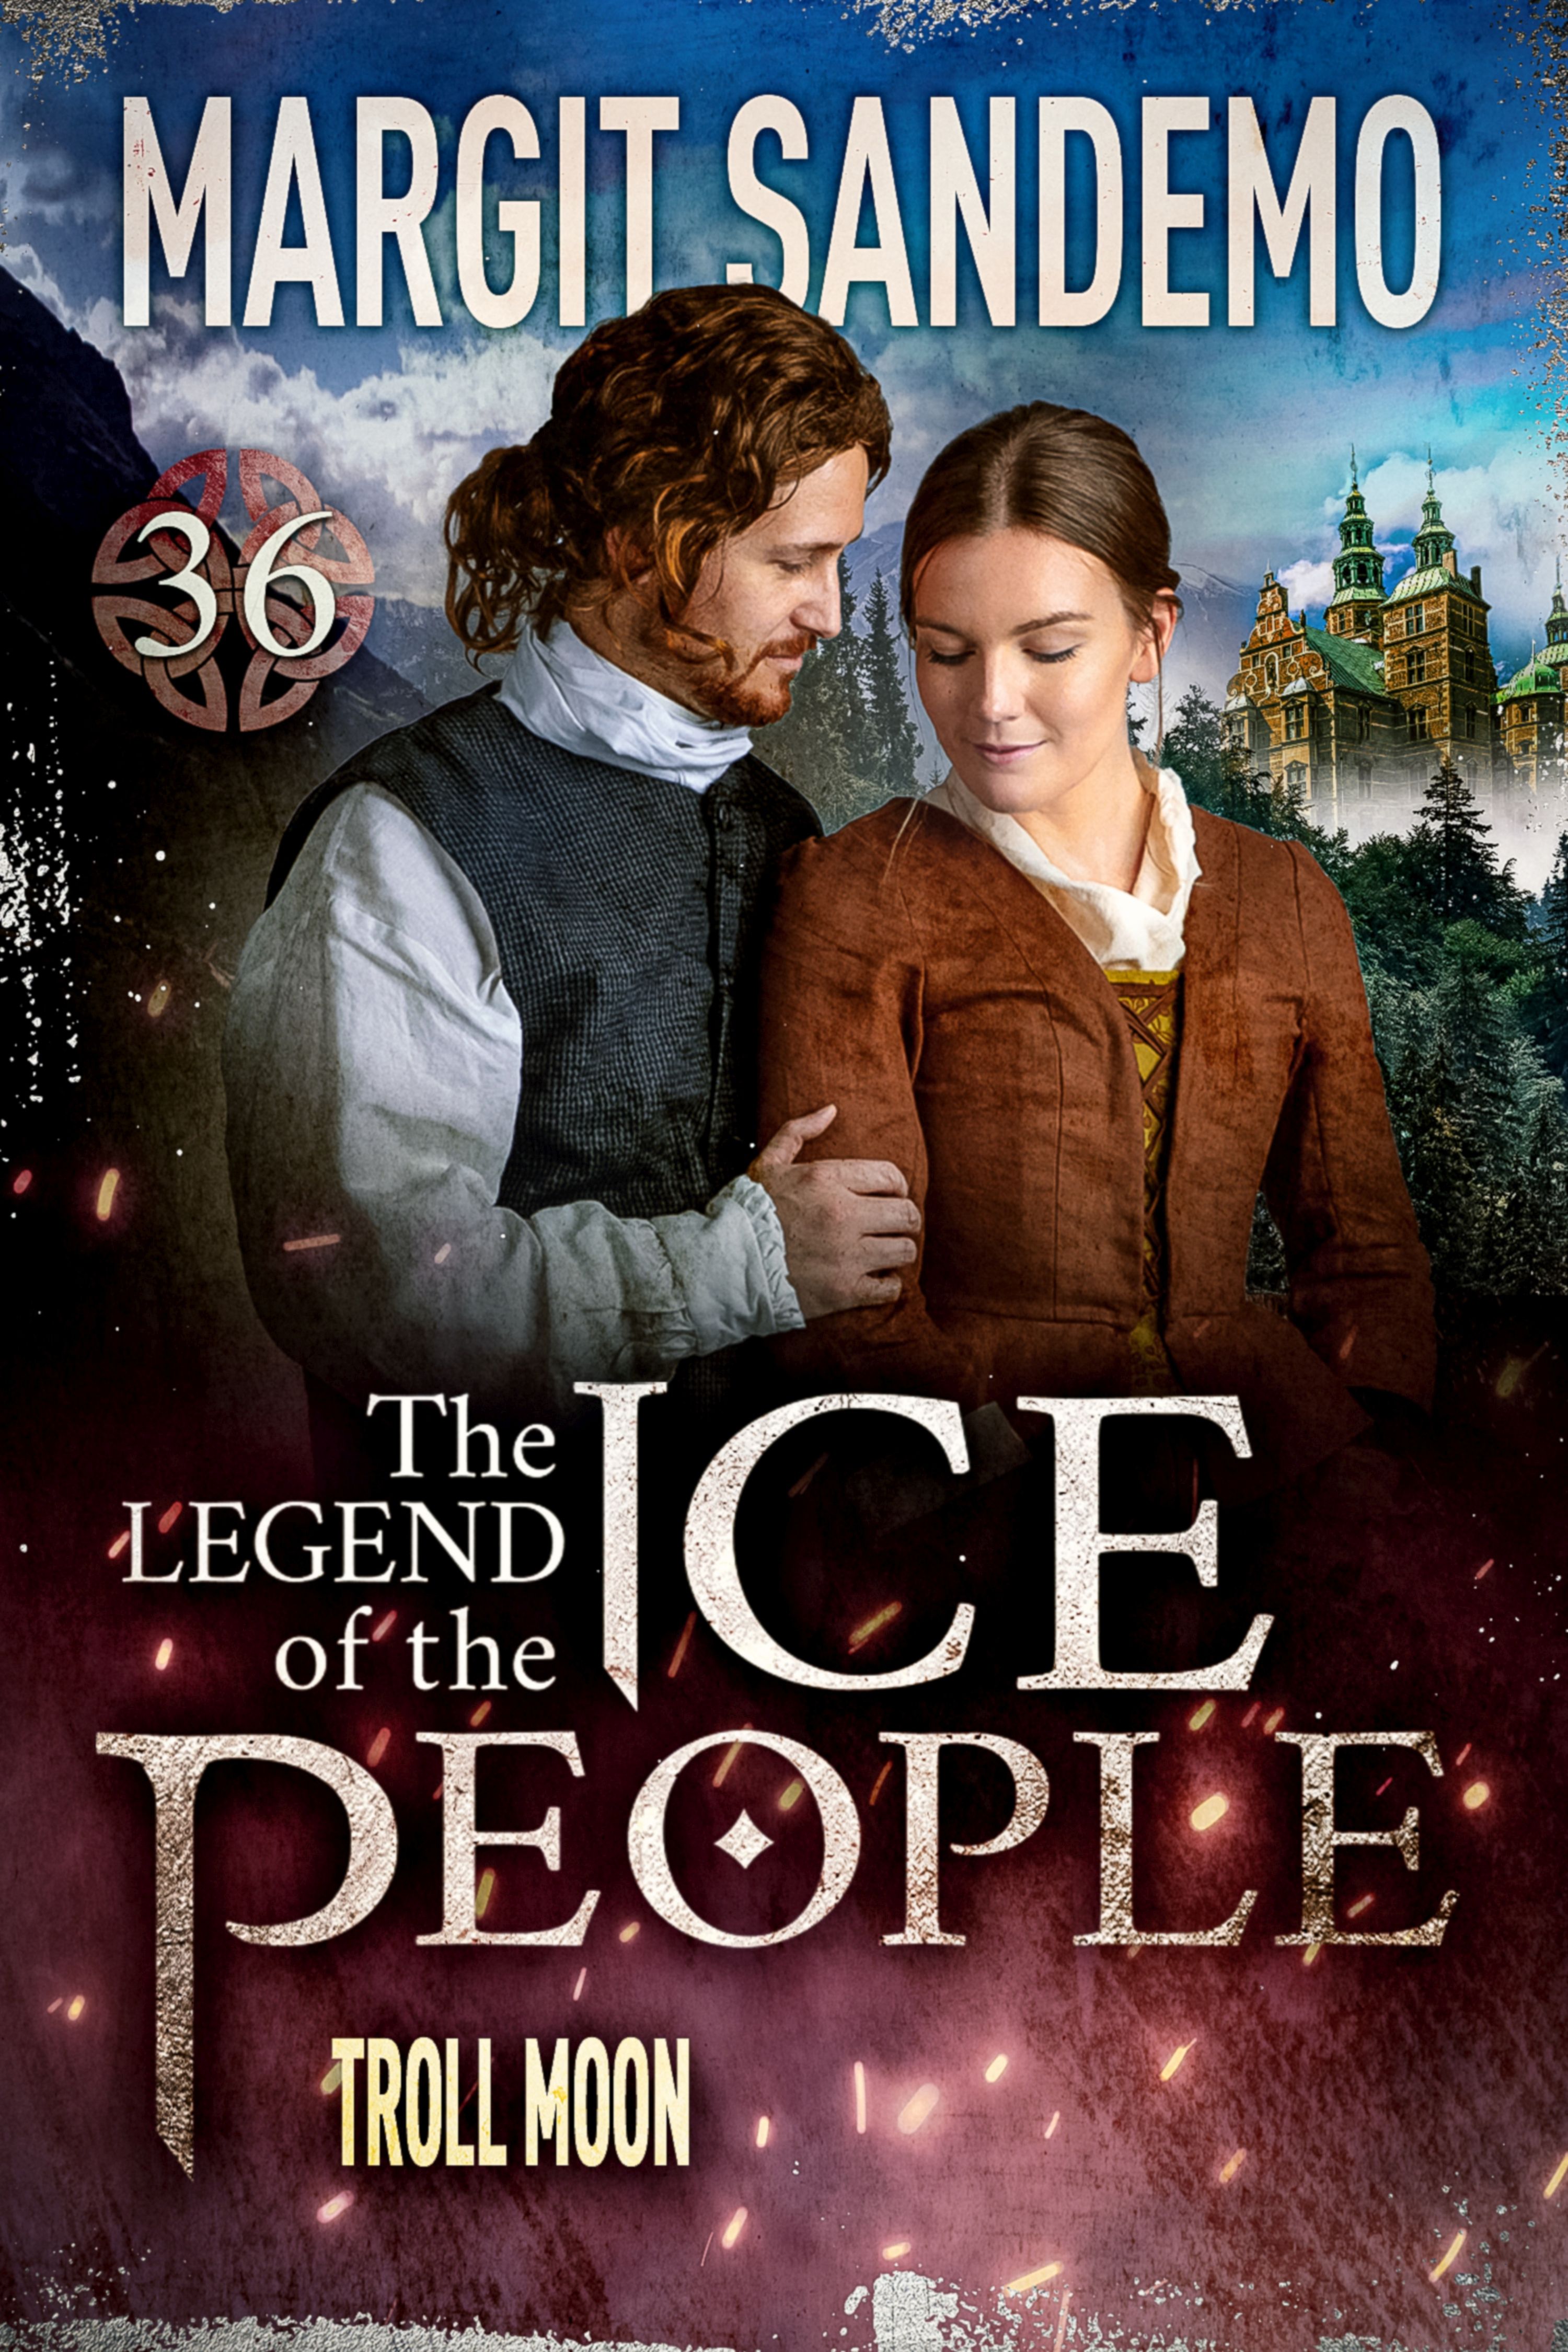 The Ice People 36 - Troll Moon, e-bog af Margit Sandemo